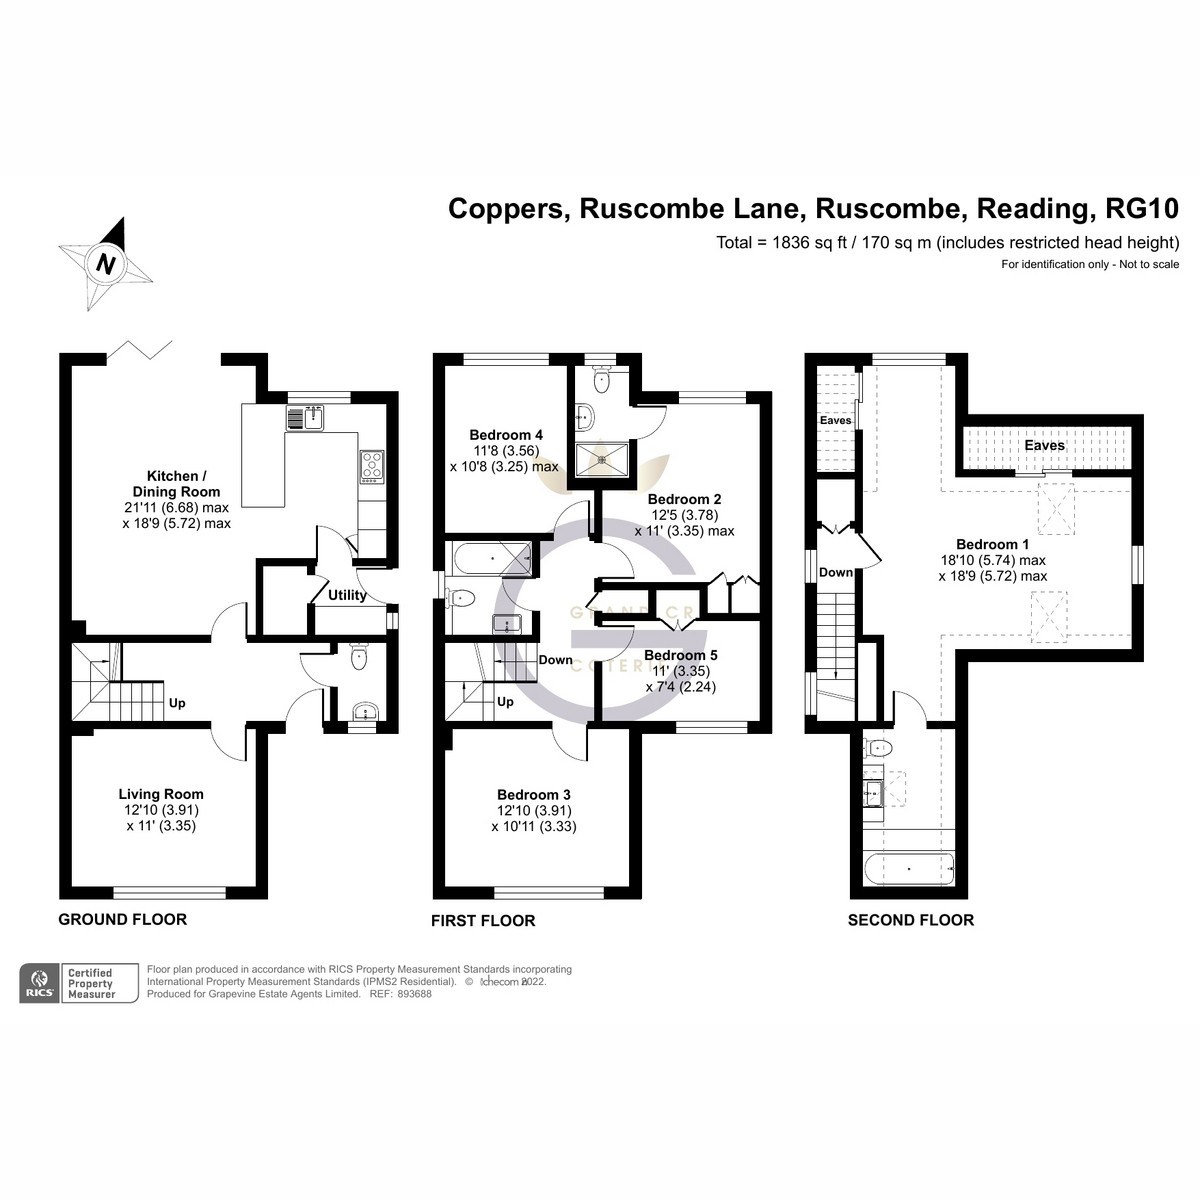 Floorplan for Ruscombe Lane, Ruscombe, RG10